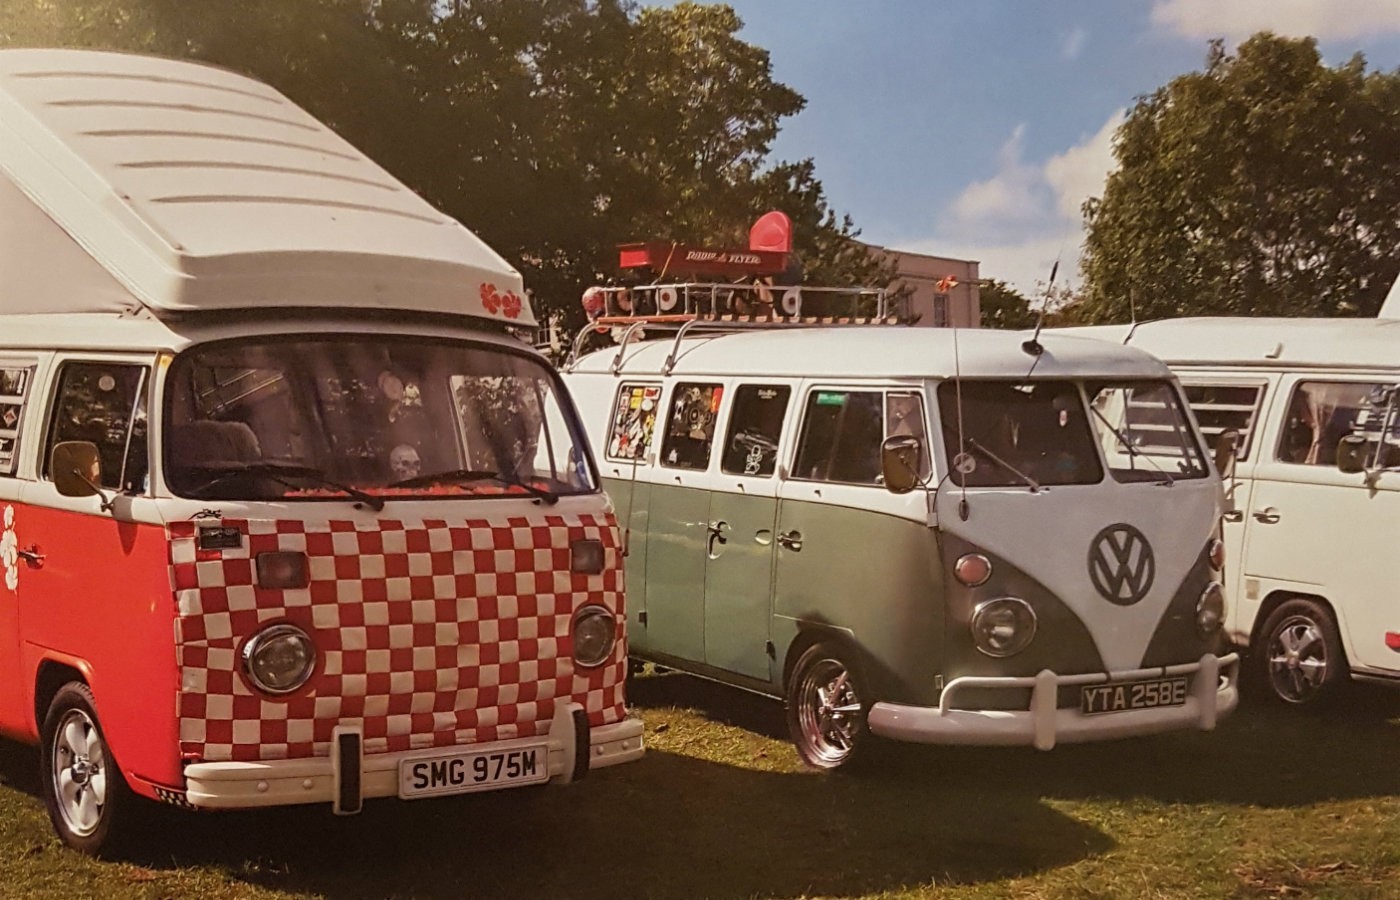 VW camper calendar April